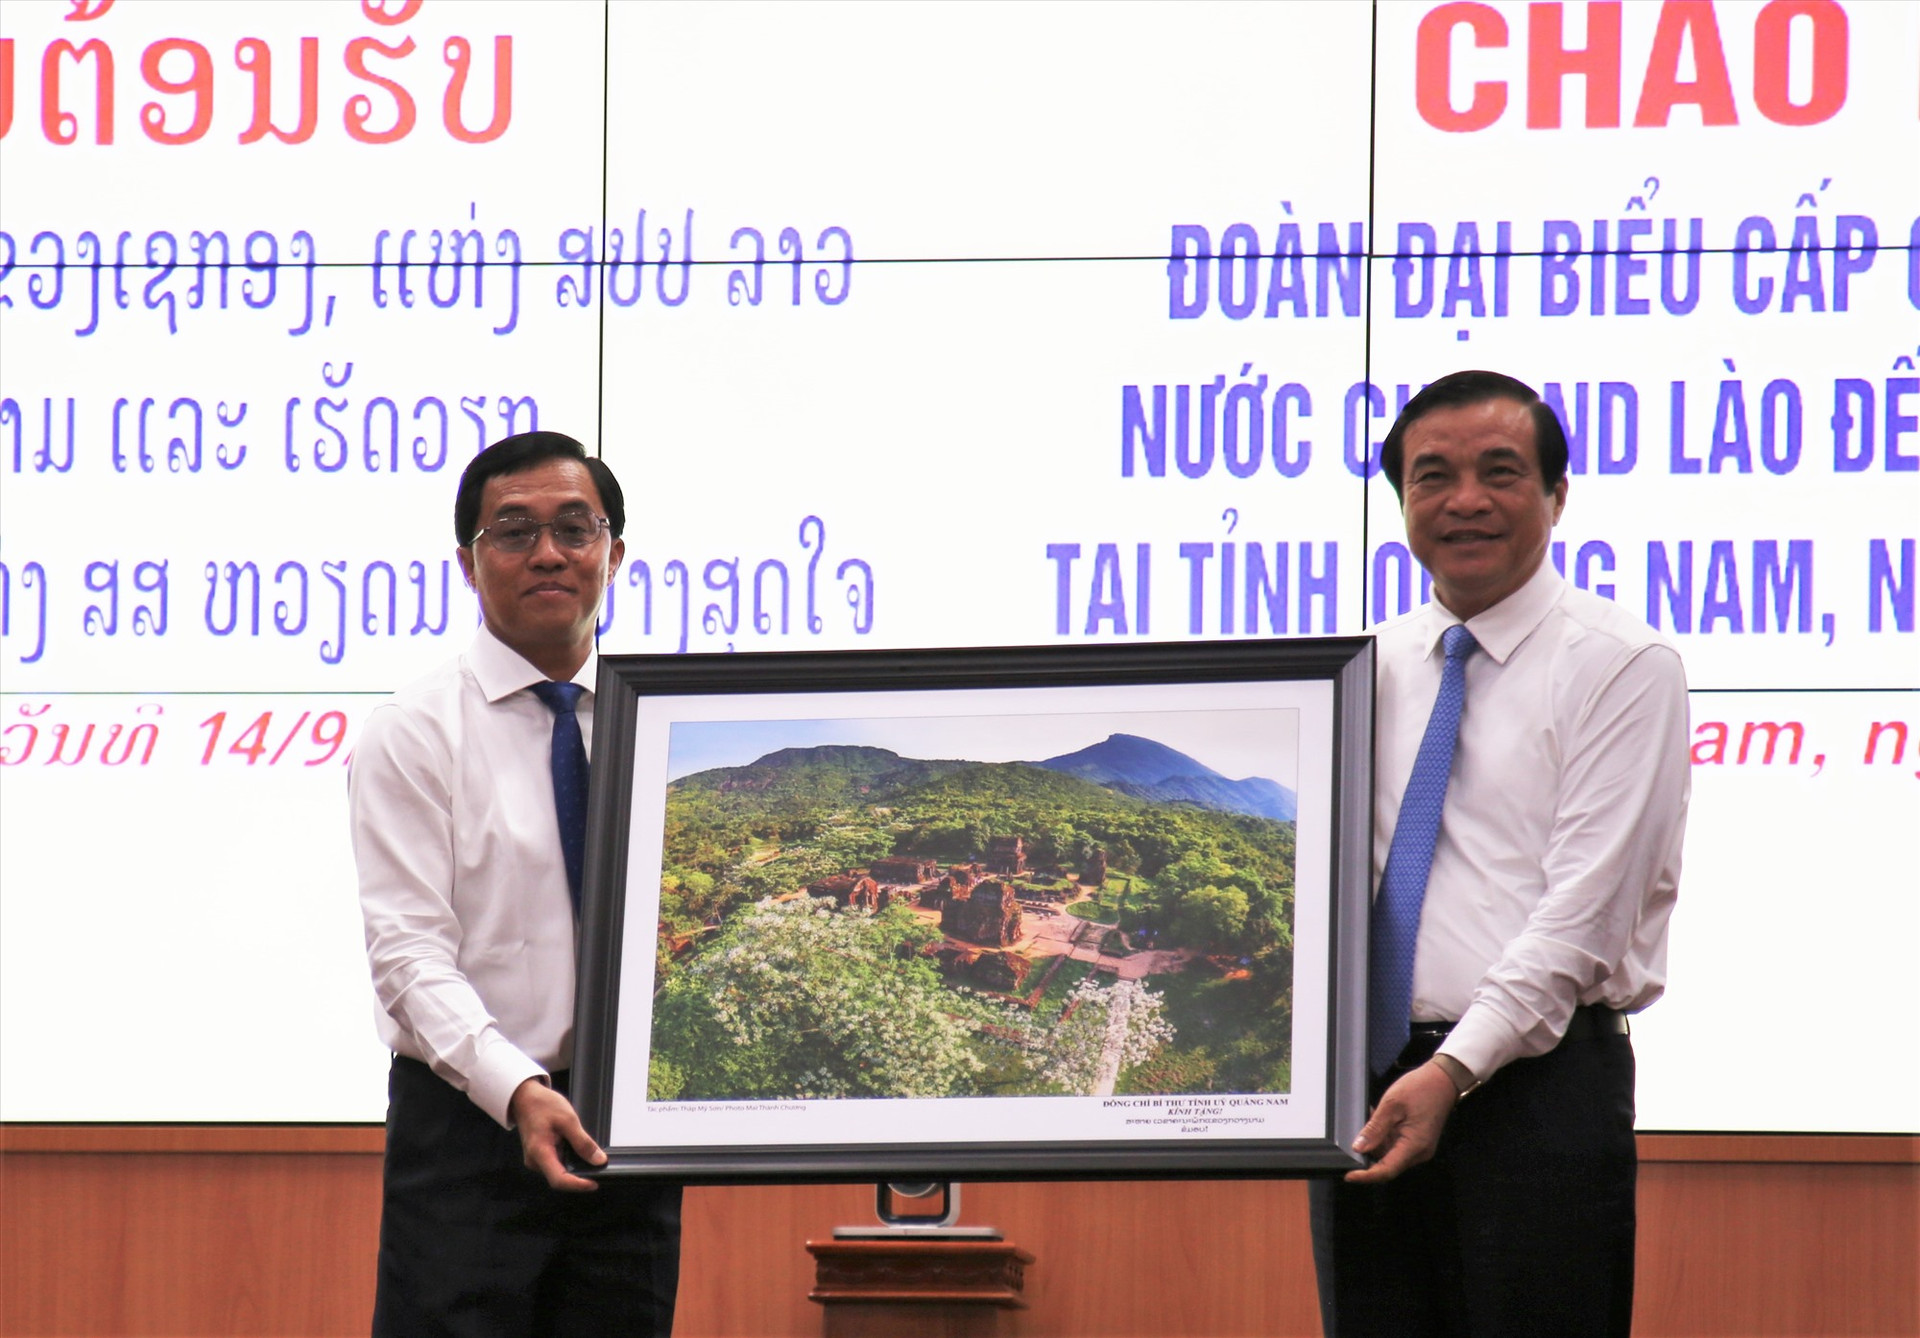 Bí thư Tỉnh ủy Phan Việt Cường tặng bức tranh lưu niệm cho Bí thư Tỉnh ủy Sê Kông. Ảnh: A.N